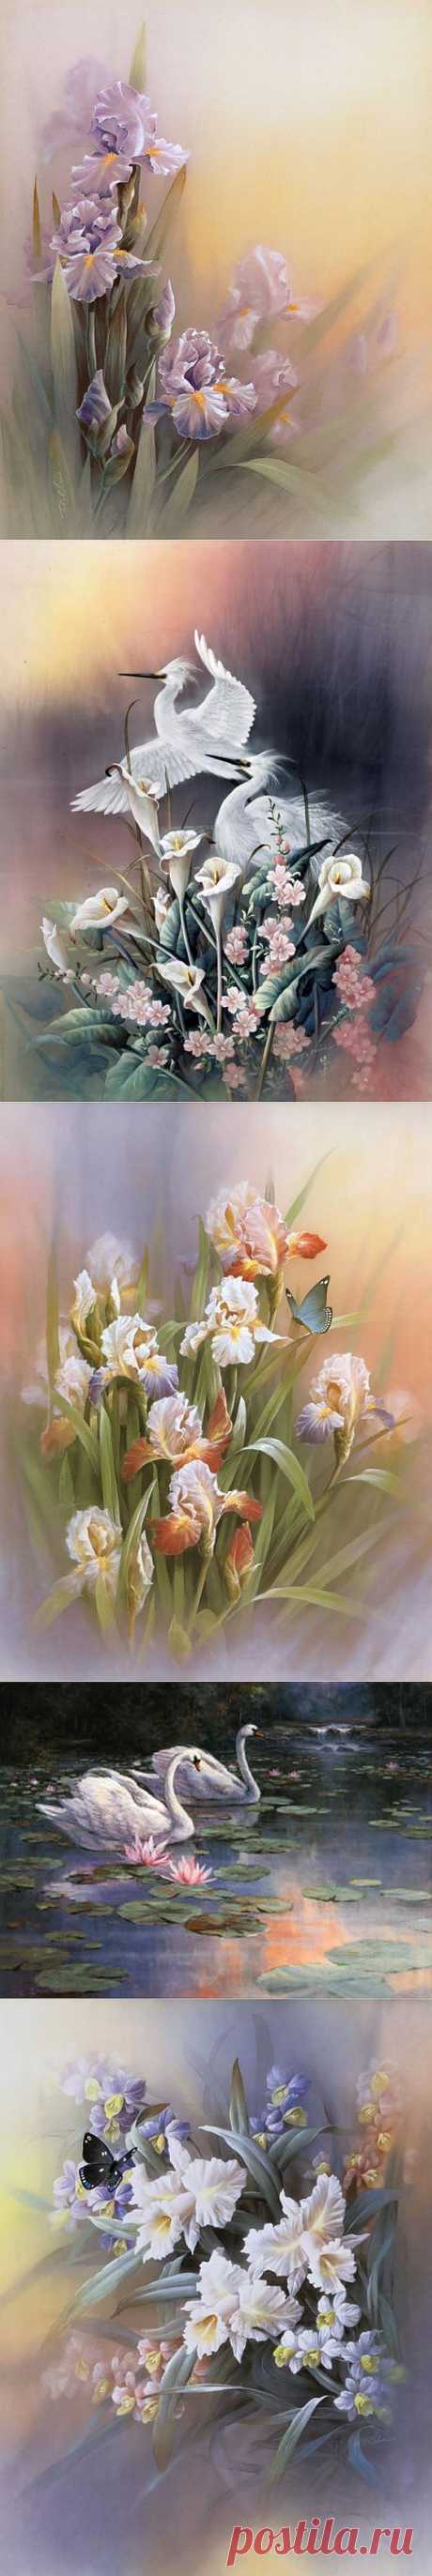 Нежные краски художника T.C.Chiu.